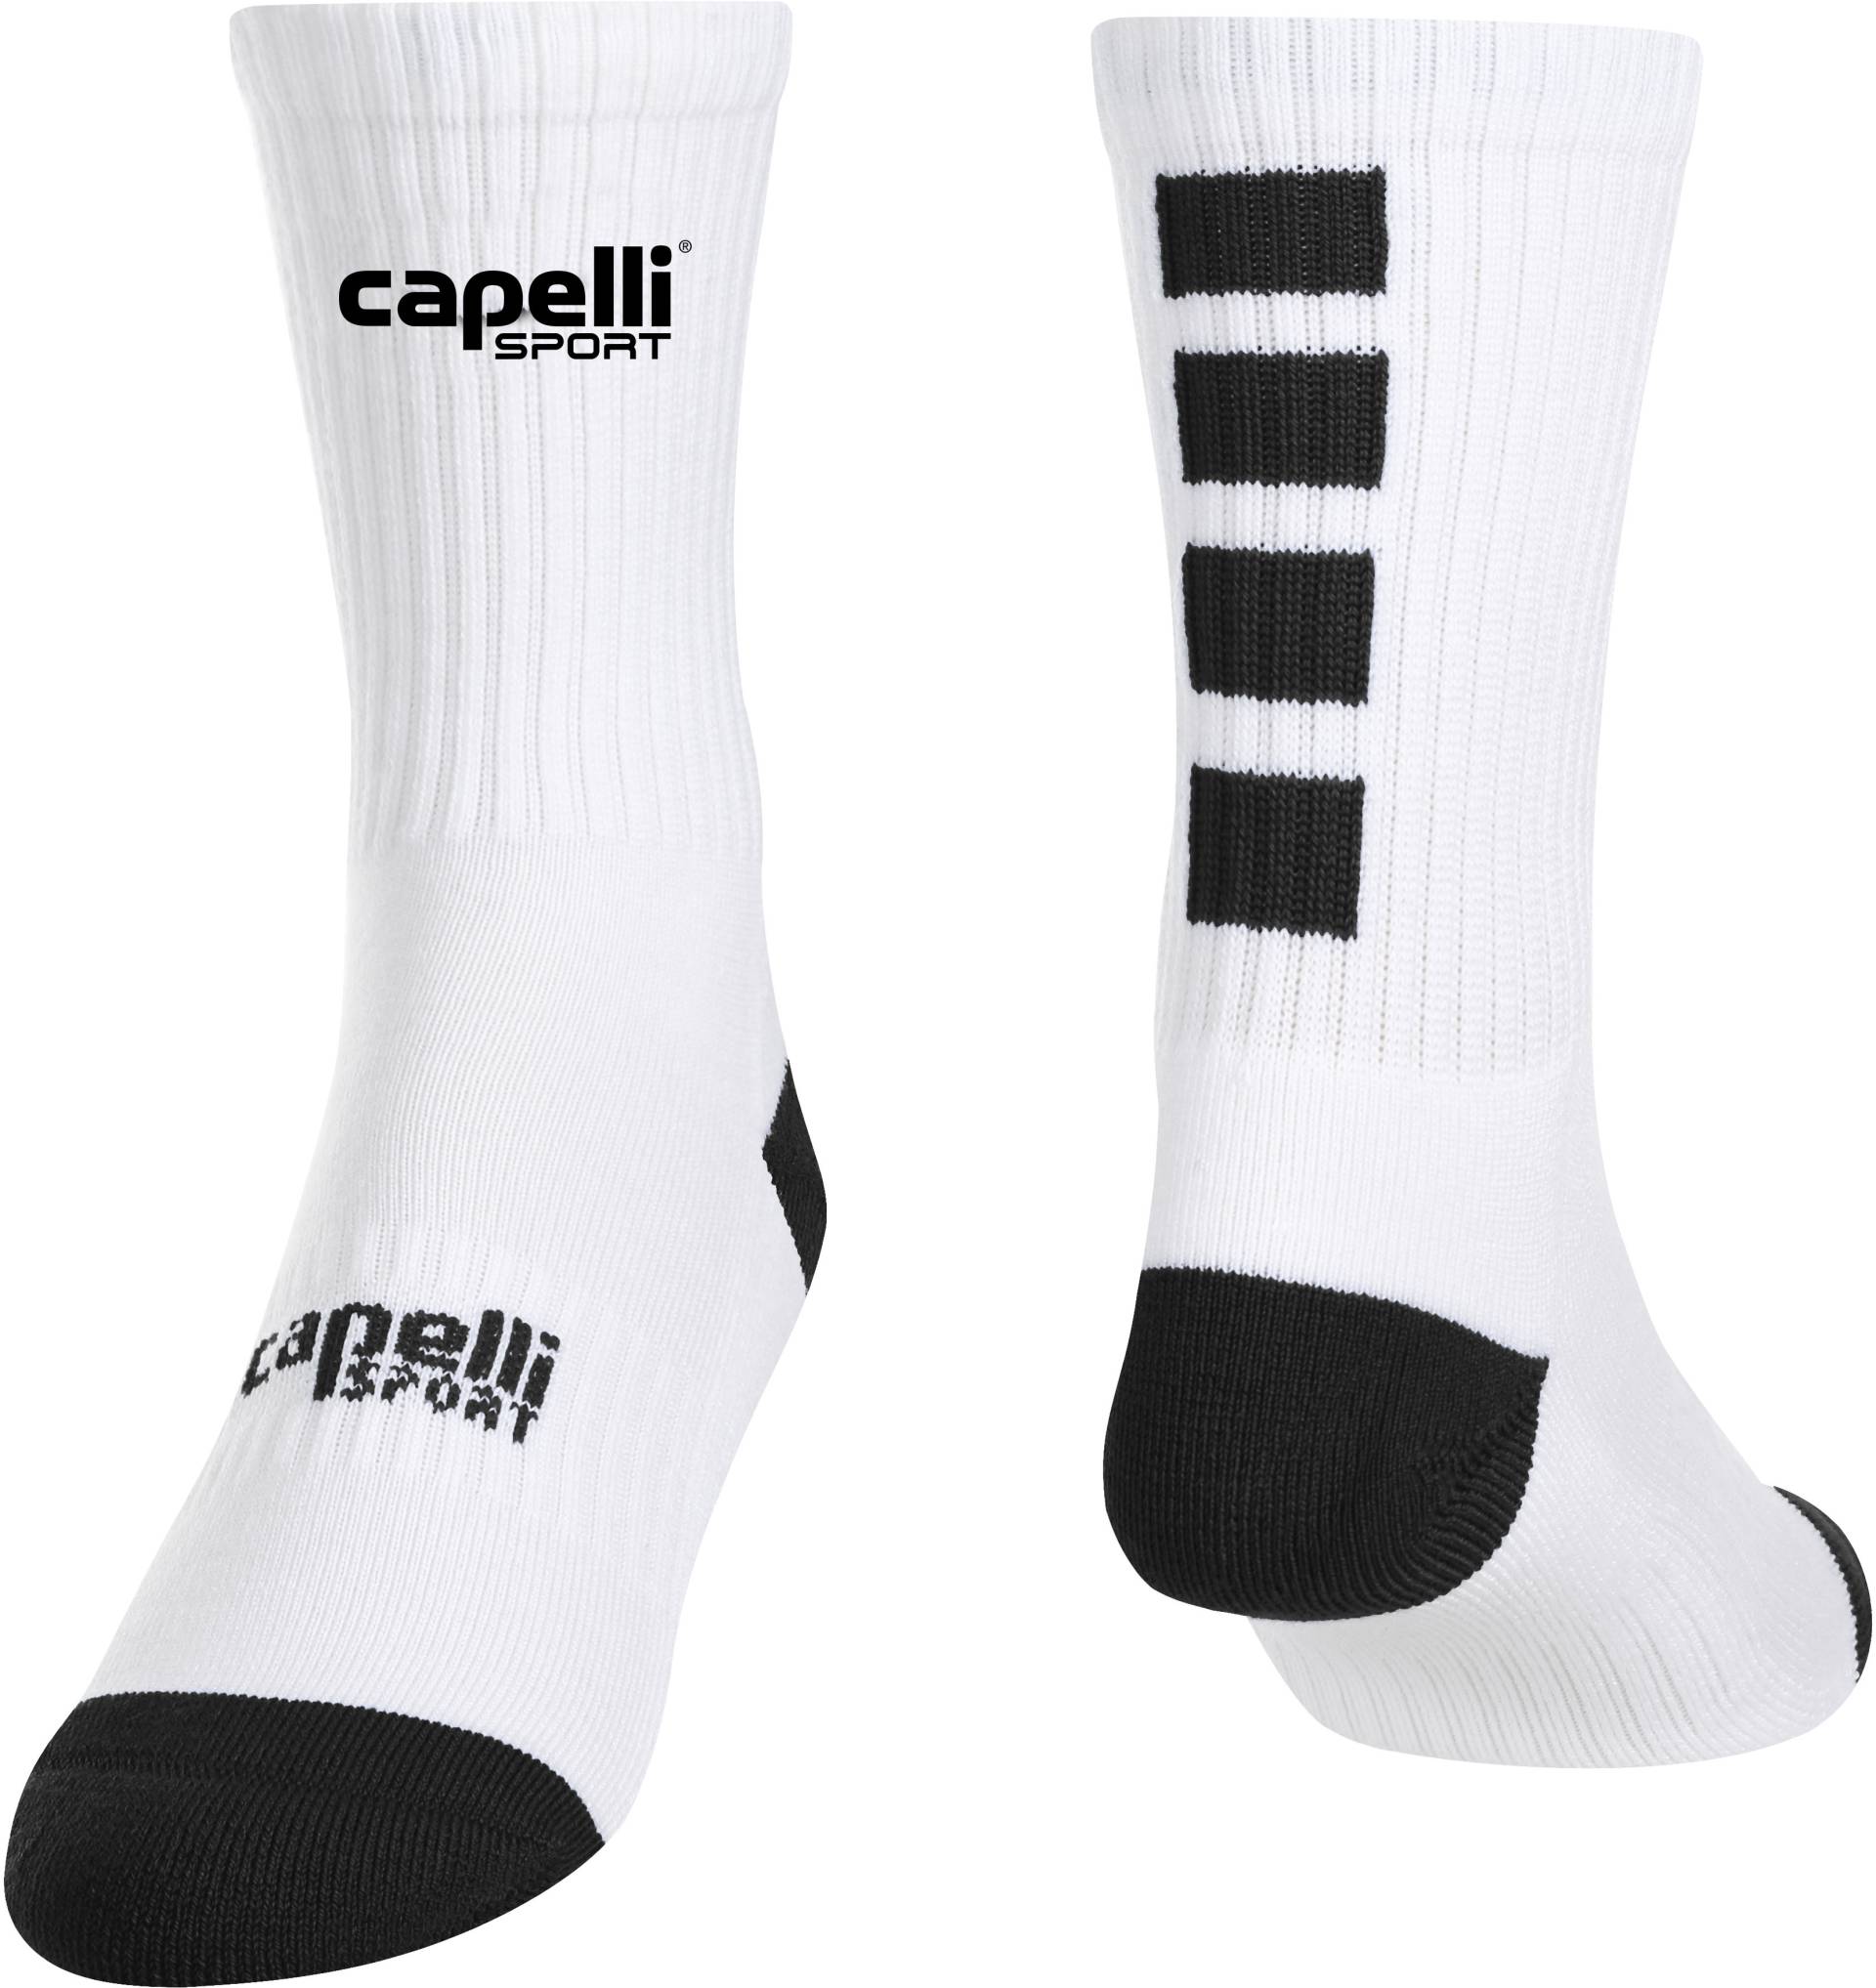 Capelli Sport Sportsocken, mit kontrastreichen Details von Capelli Sport